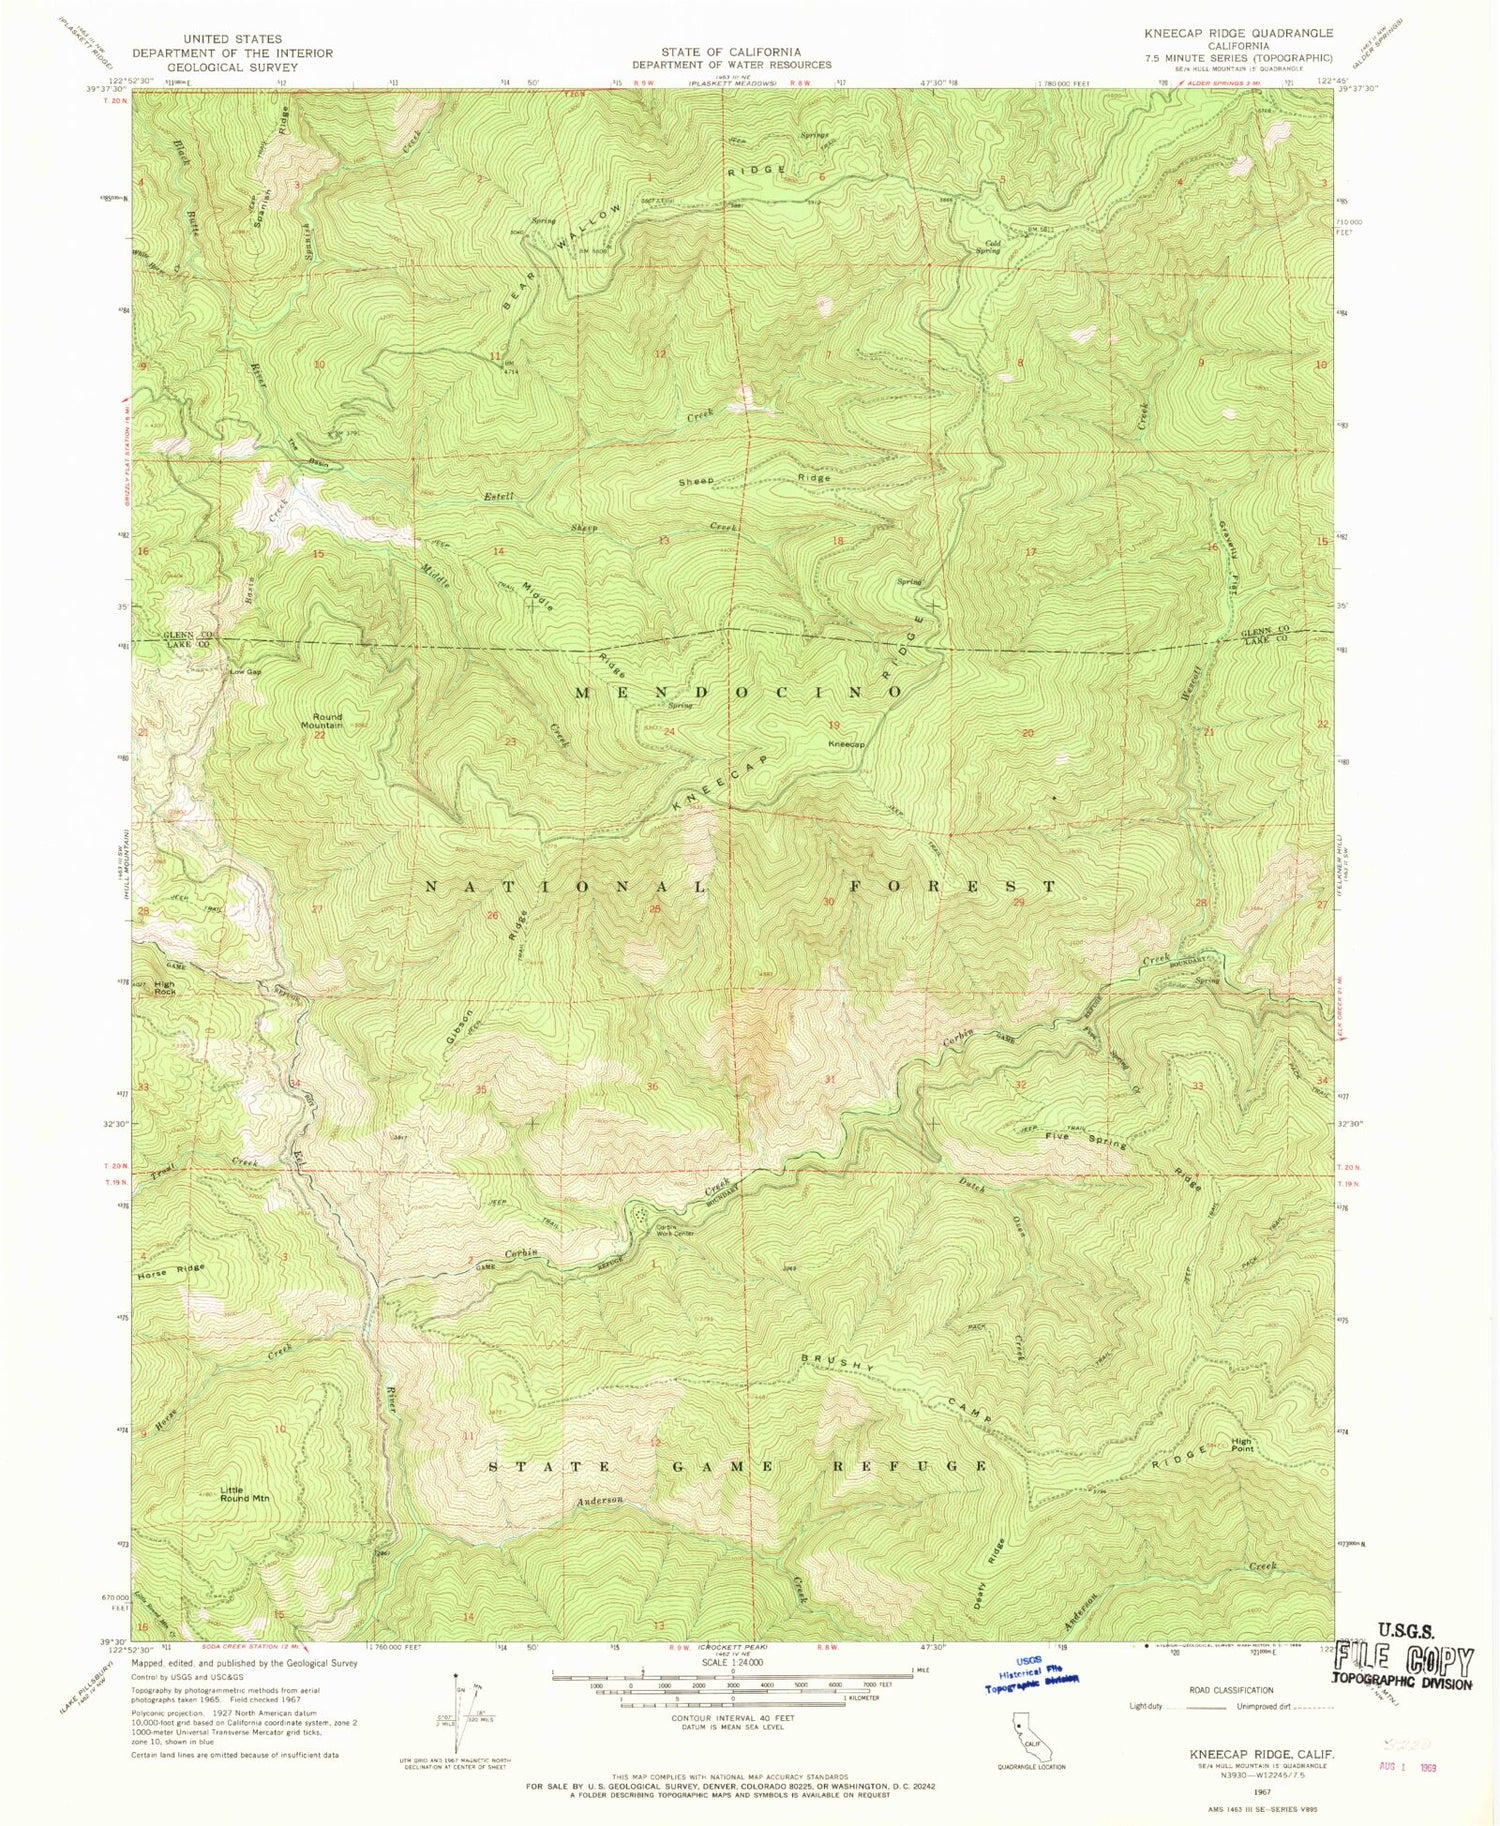 Classic USGS Kneecap Ridge California 7.5'x7.5' Topo Map Image